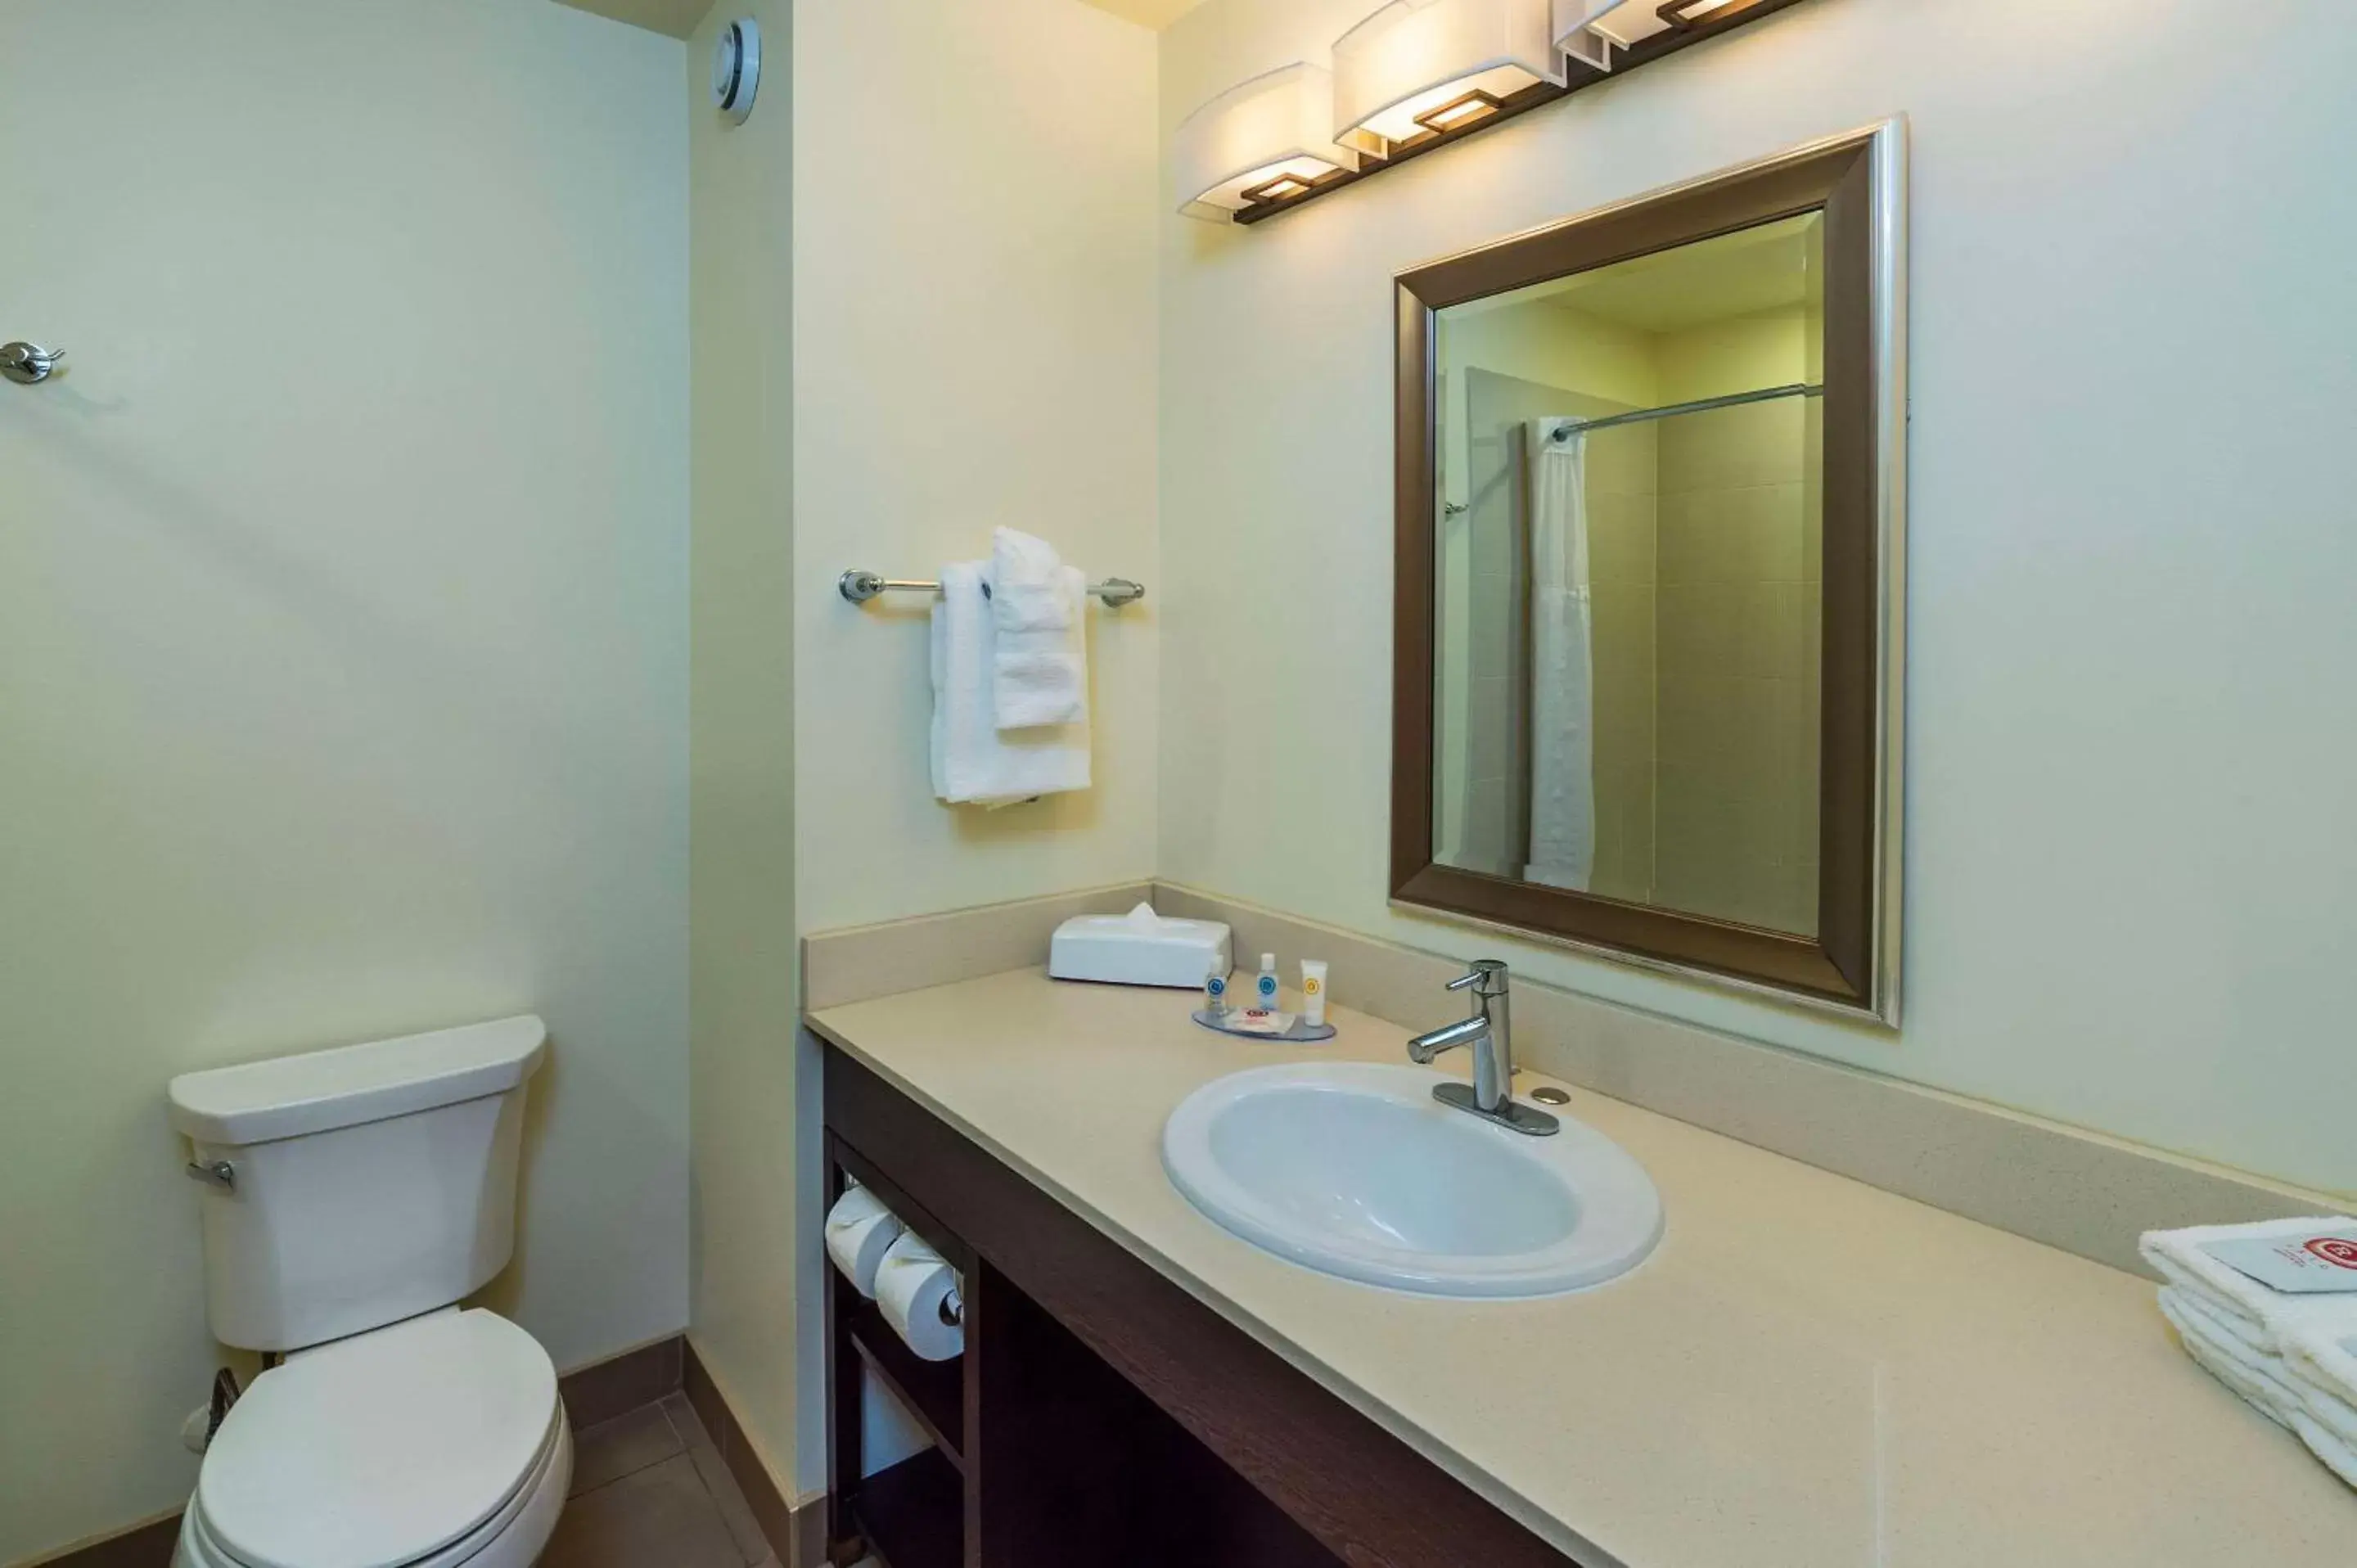 Bedroom, Bathroom in Comfort Inn & Suites Terrace